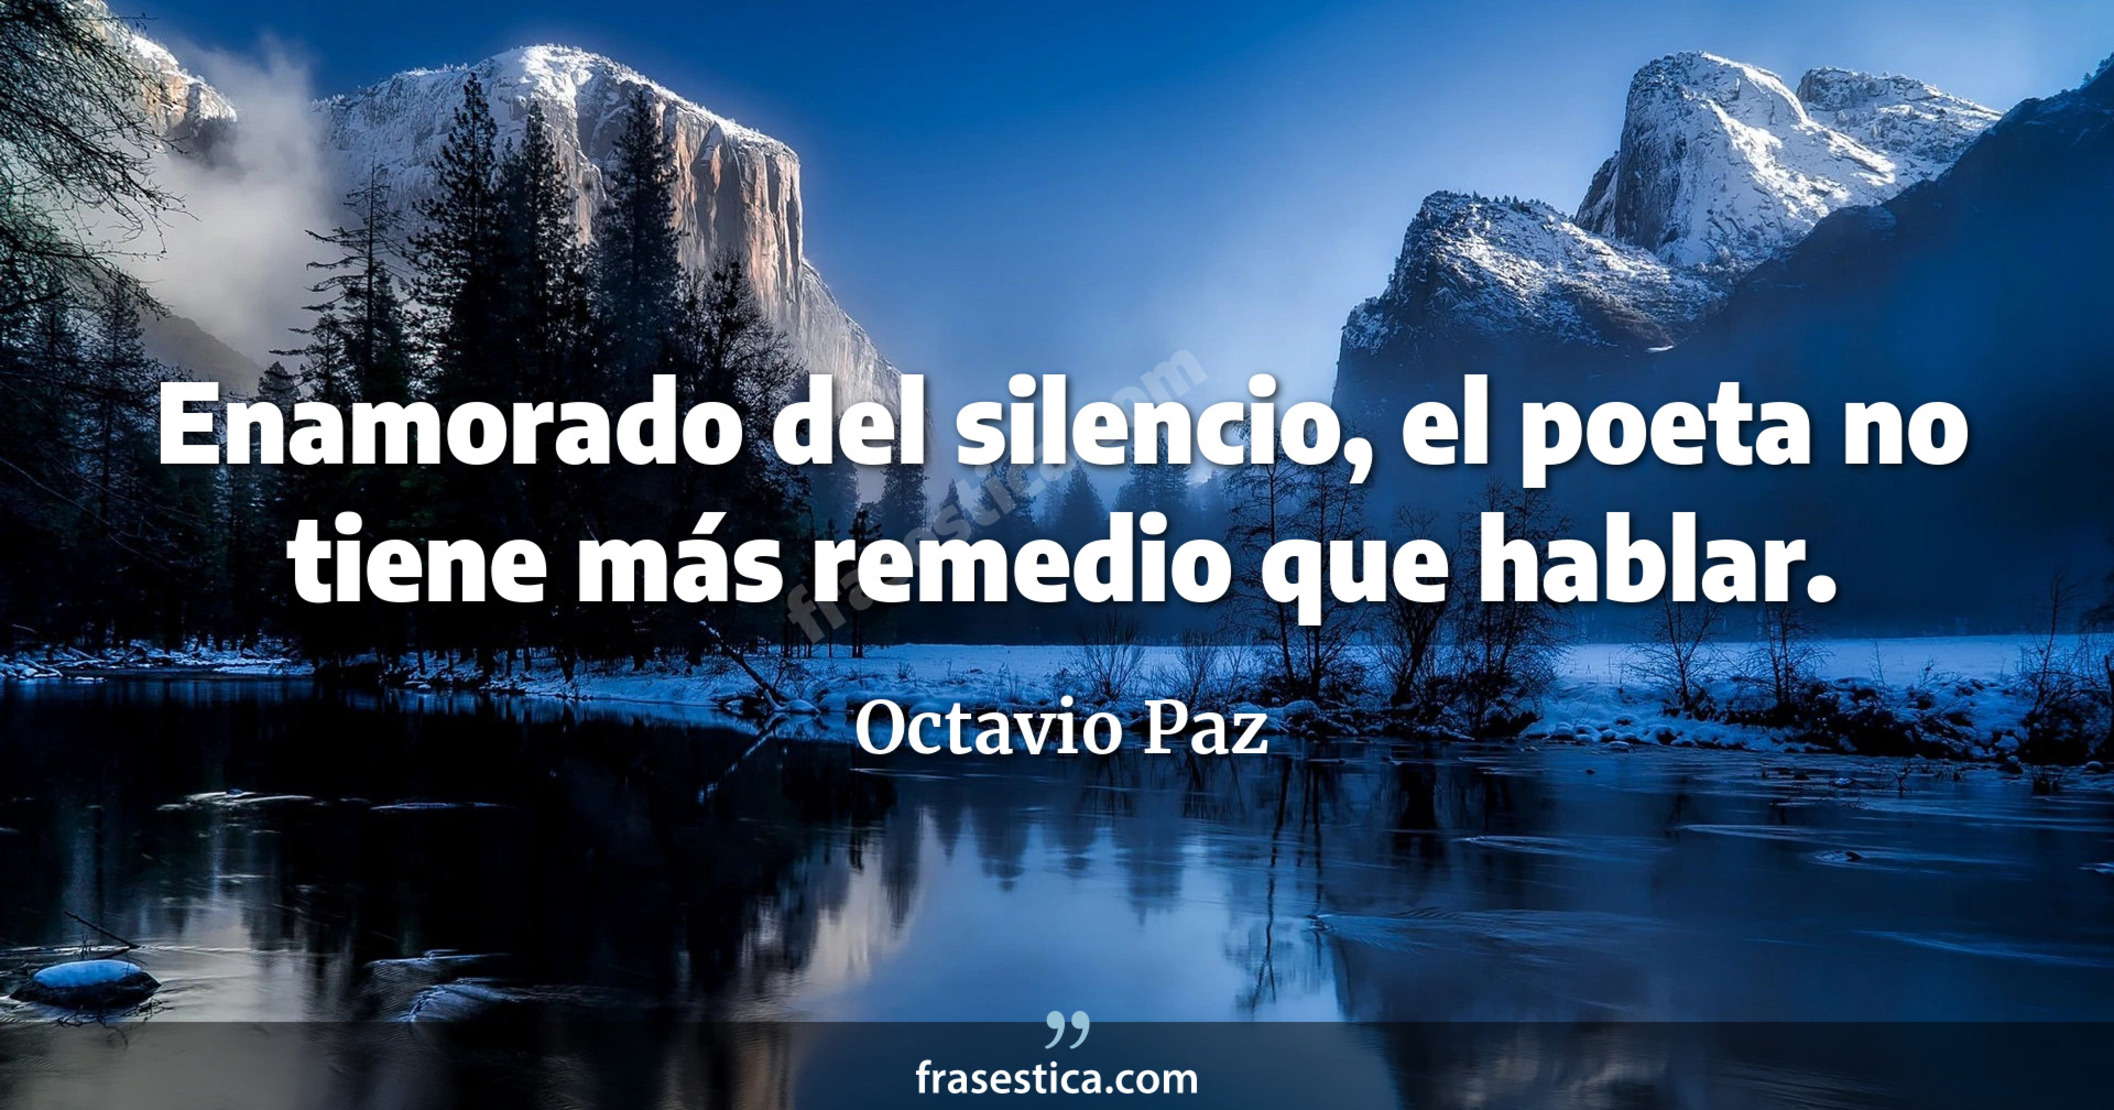 Enamorado del silencio, el poeta no tiene más remedio que hablar. - Octavio Paz